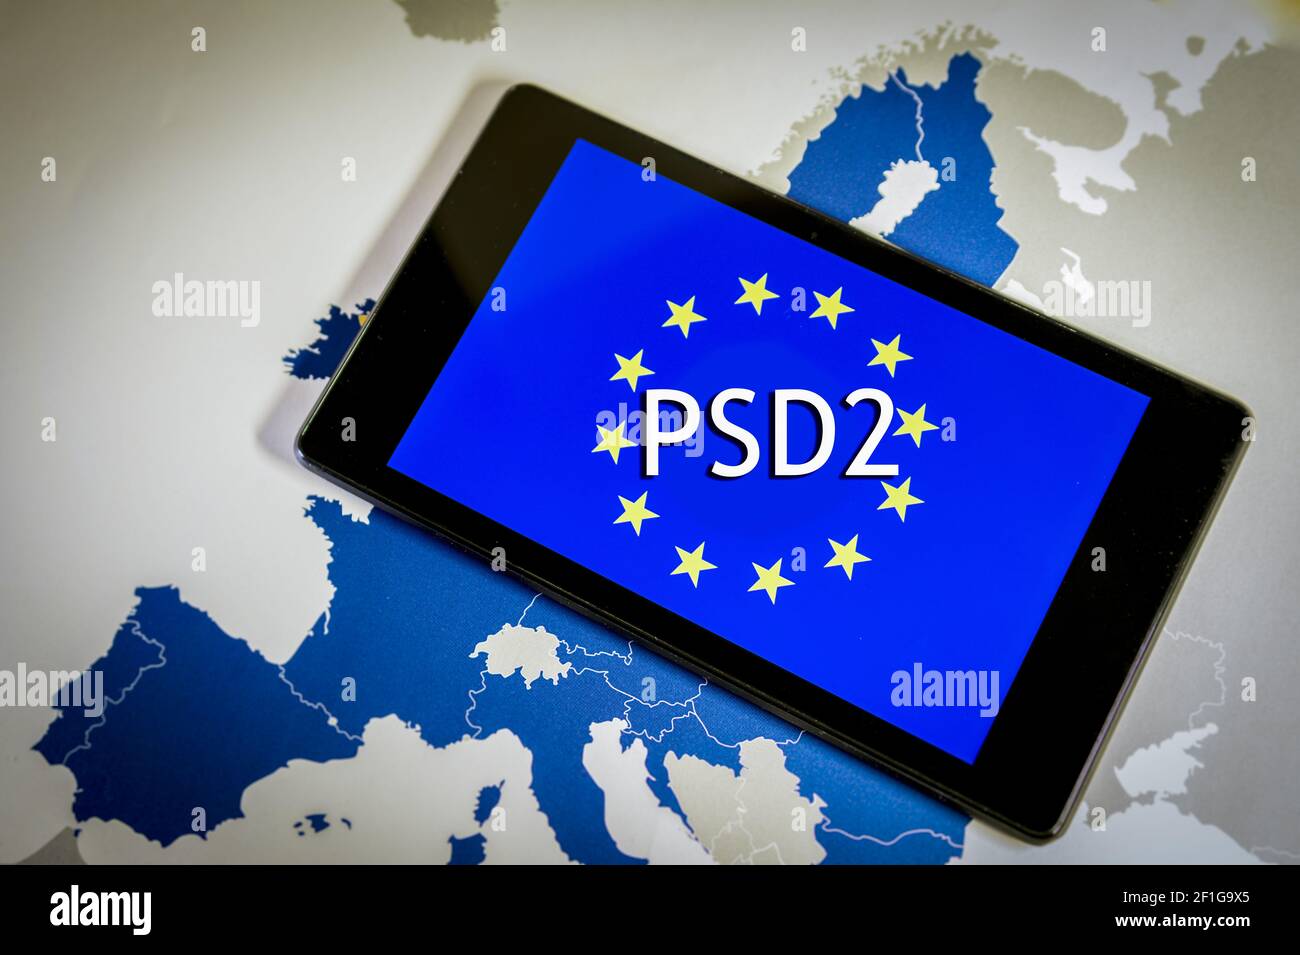 Directiva de servicios de pago 2,smartphone, bandera de la UE y mapa. Foto de stock